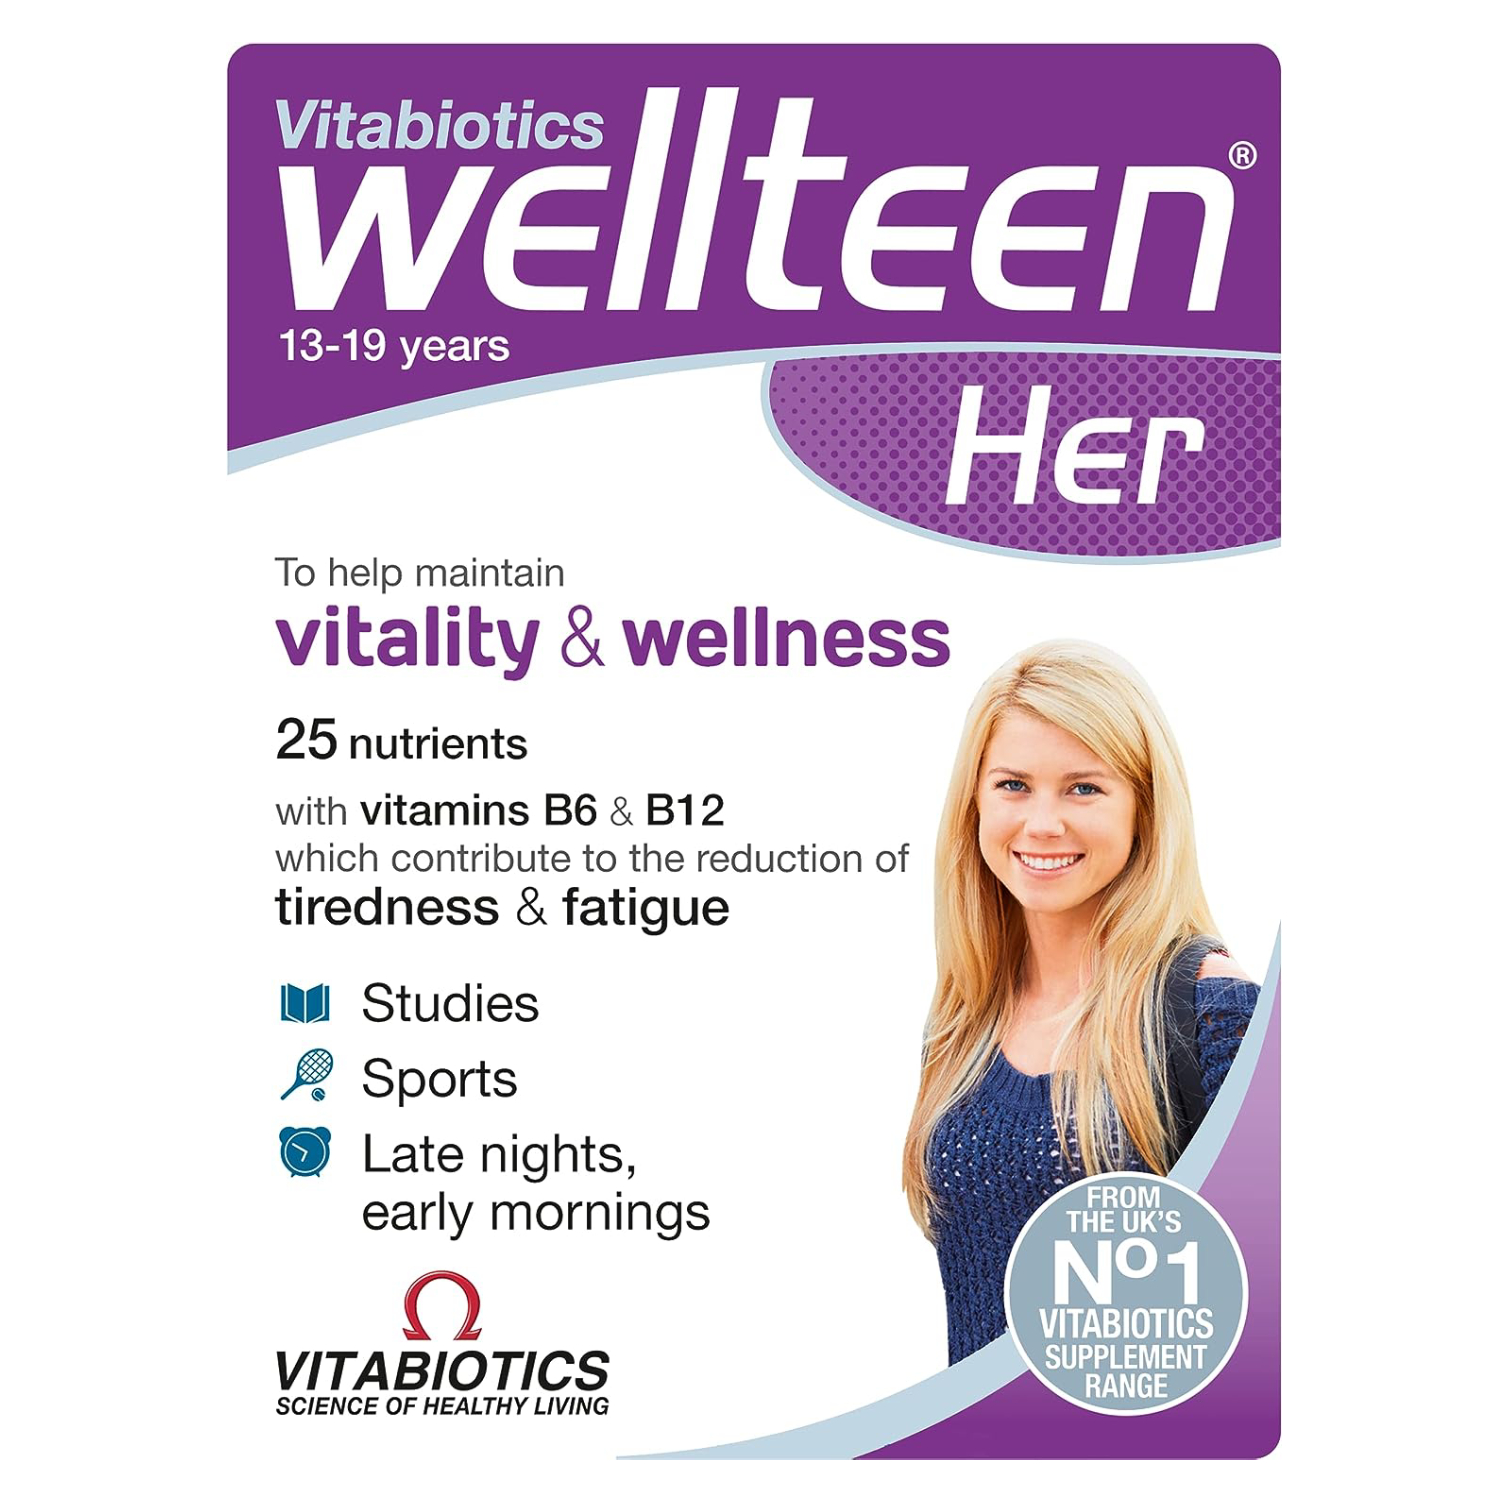 Vitabiotics Wellteen Her Tablets 30's